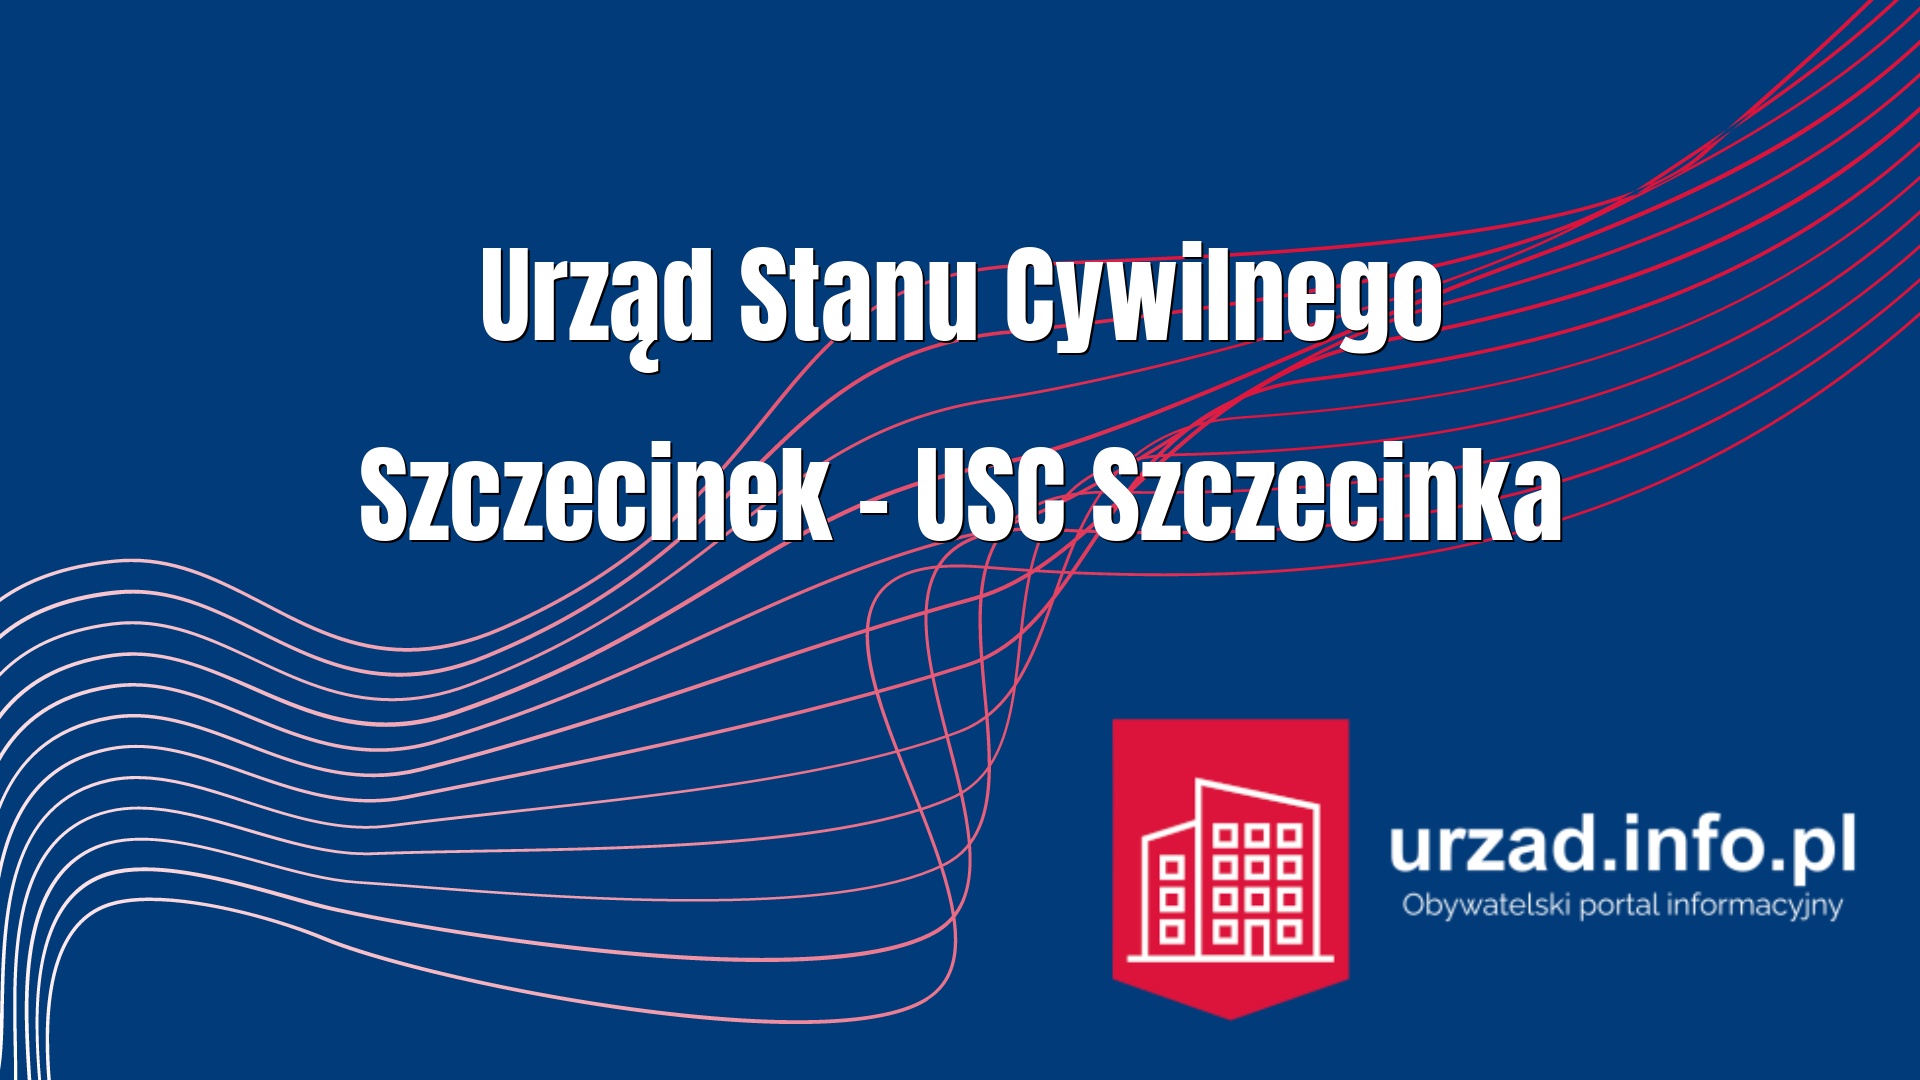 Urząd Stanu Cywilnego Szczecinek – USC Szczecinka